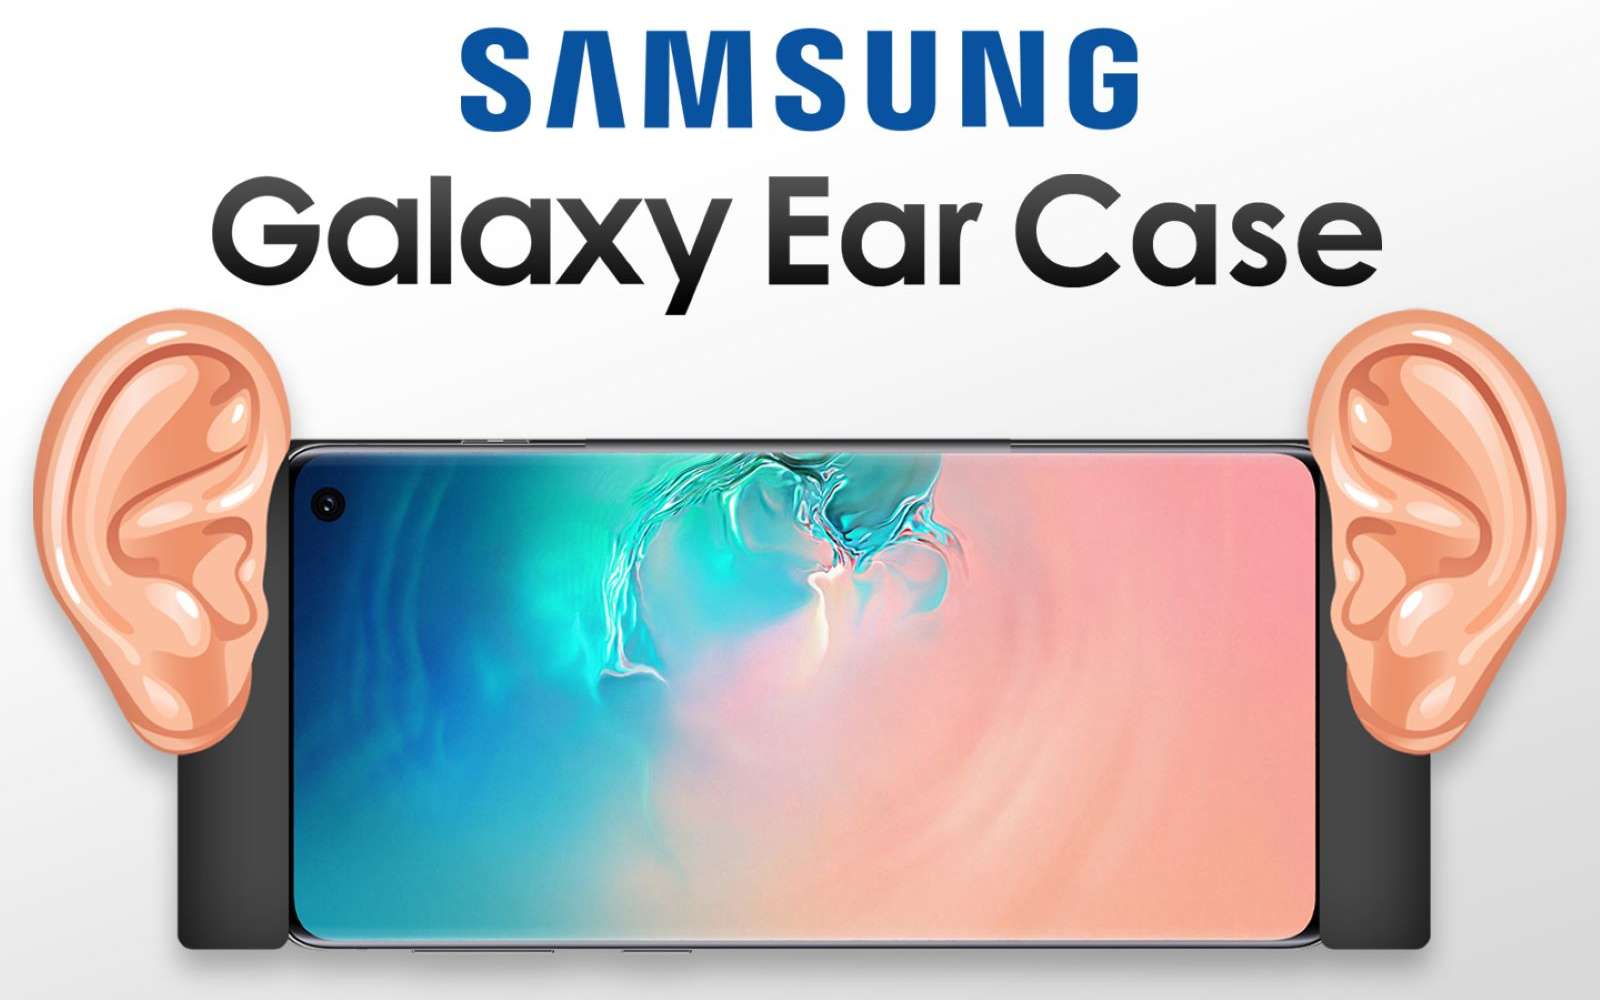 Des oreilles sur une coque de téléphone ? C'est Samsung qui l'envisage... © LetsGo Digital